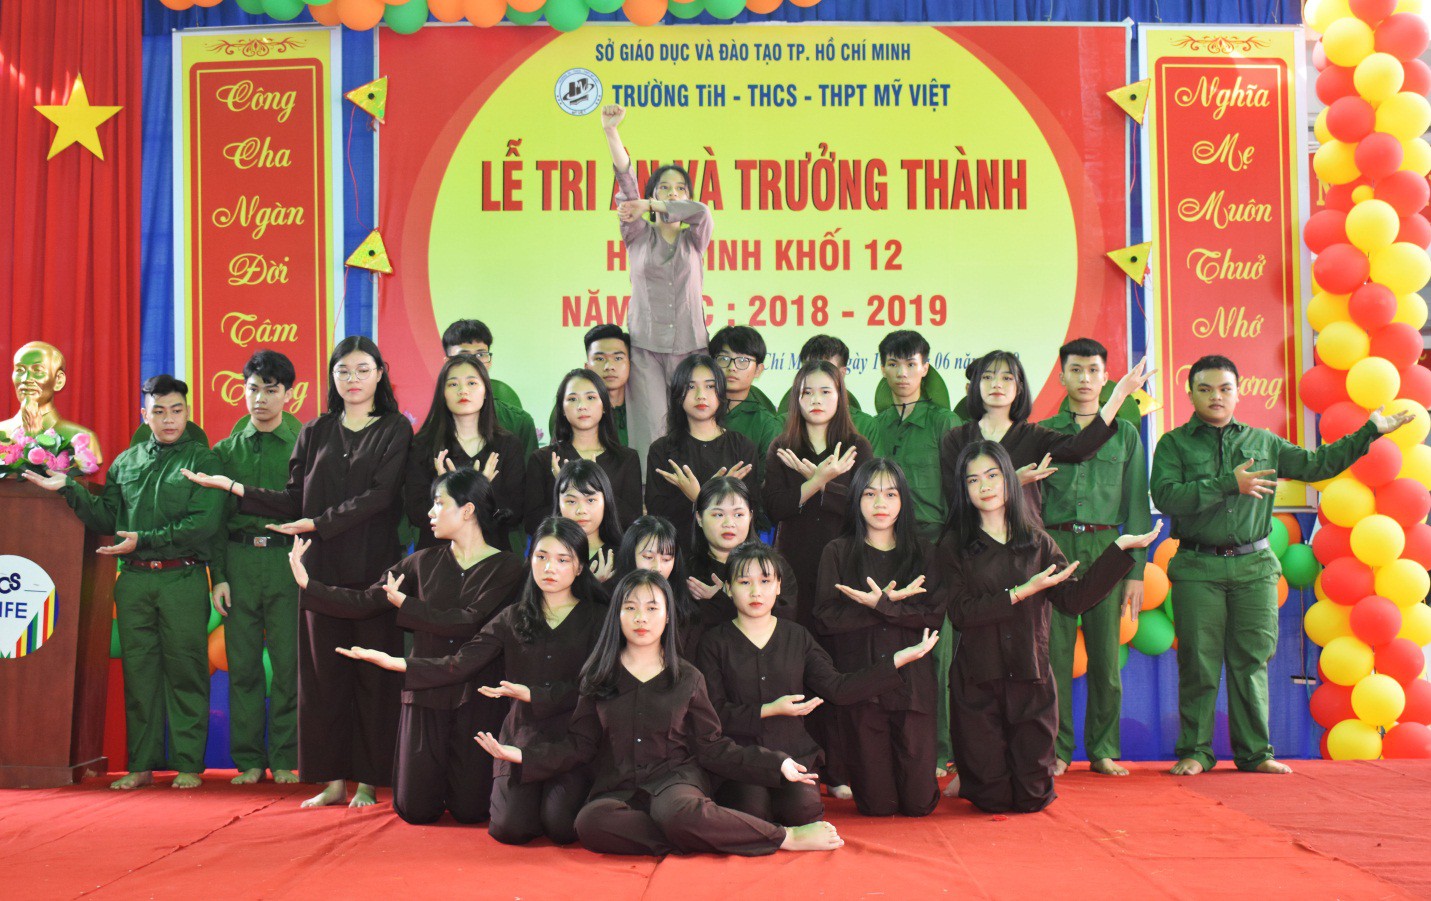 Nước mắt xen lẫn niềm vui trong lễ tri ân và trưởng thành của teen Mỹ Việt - Ảnh 6.